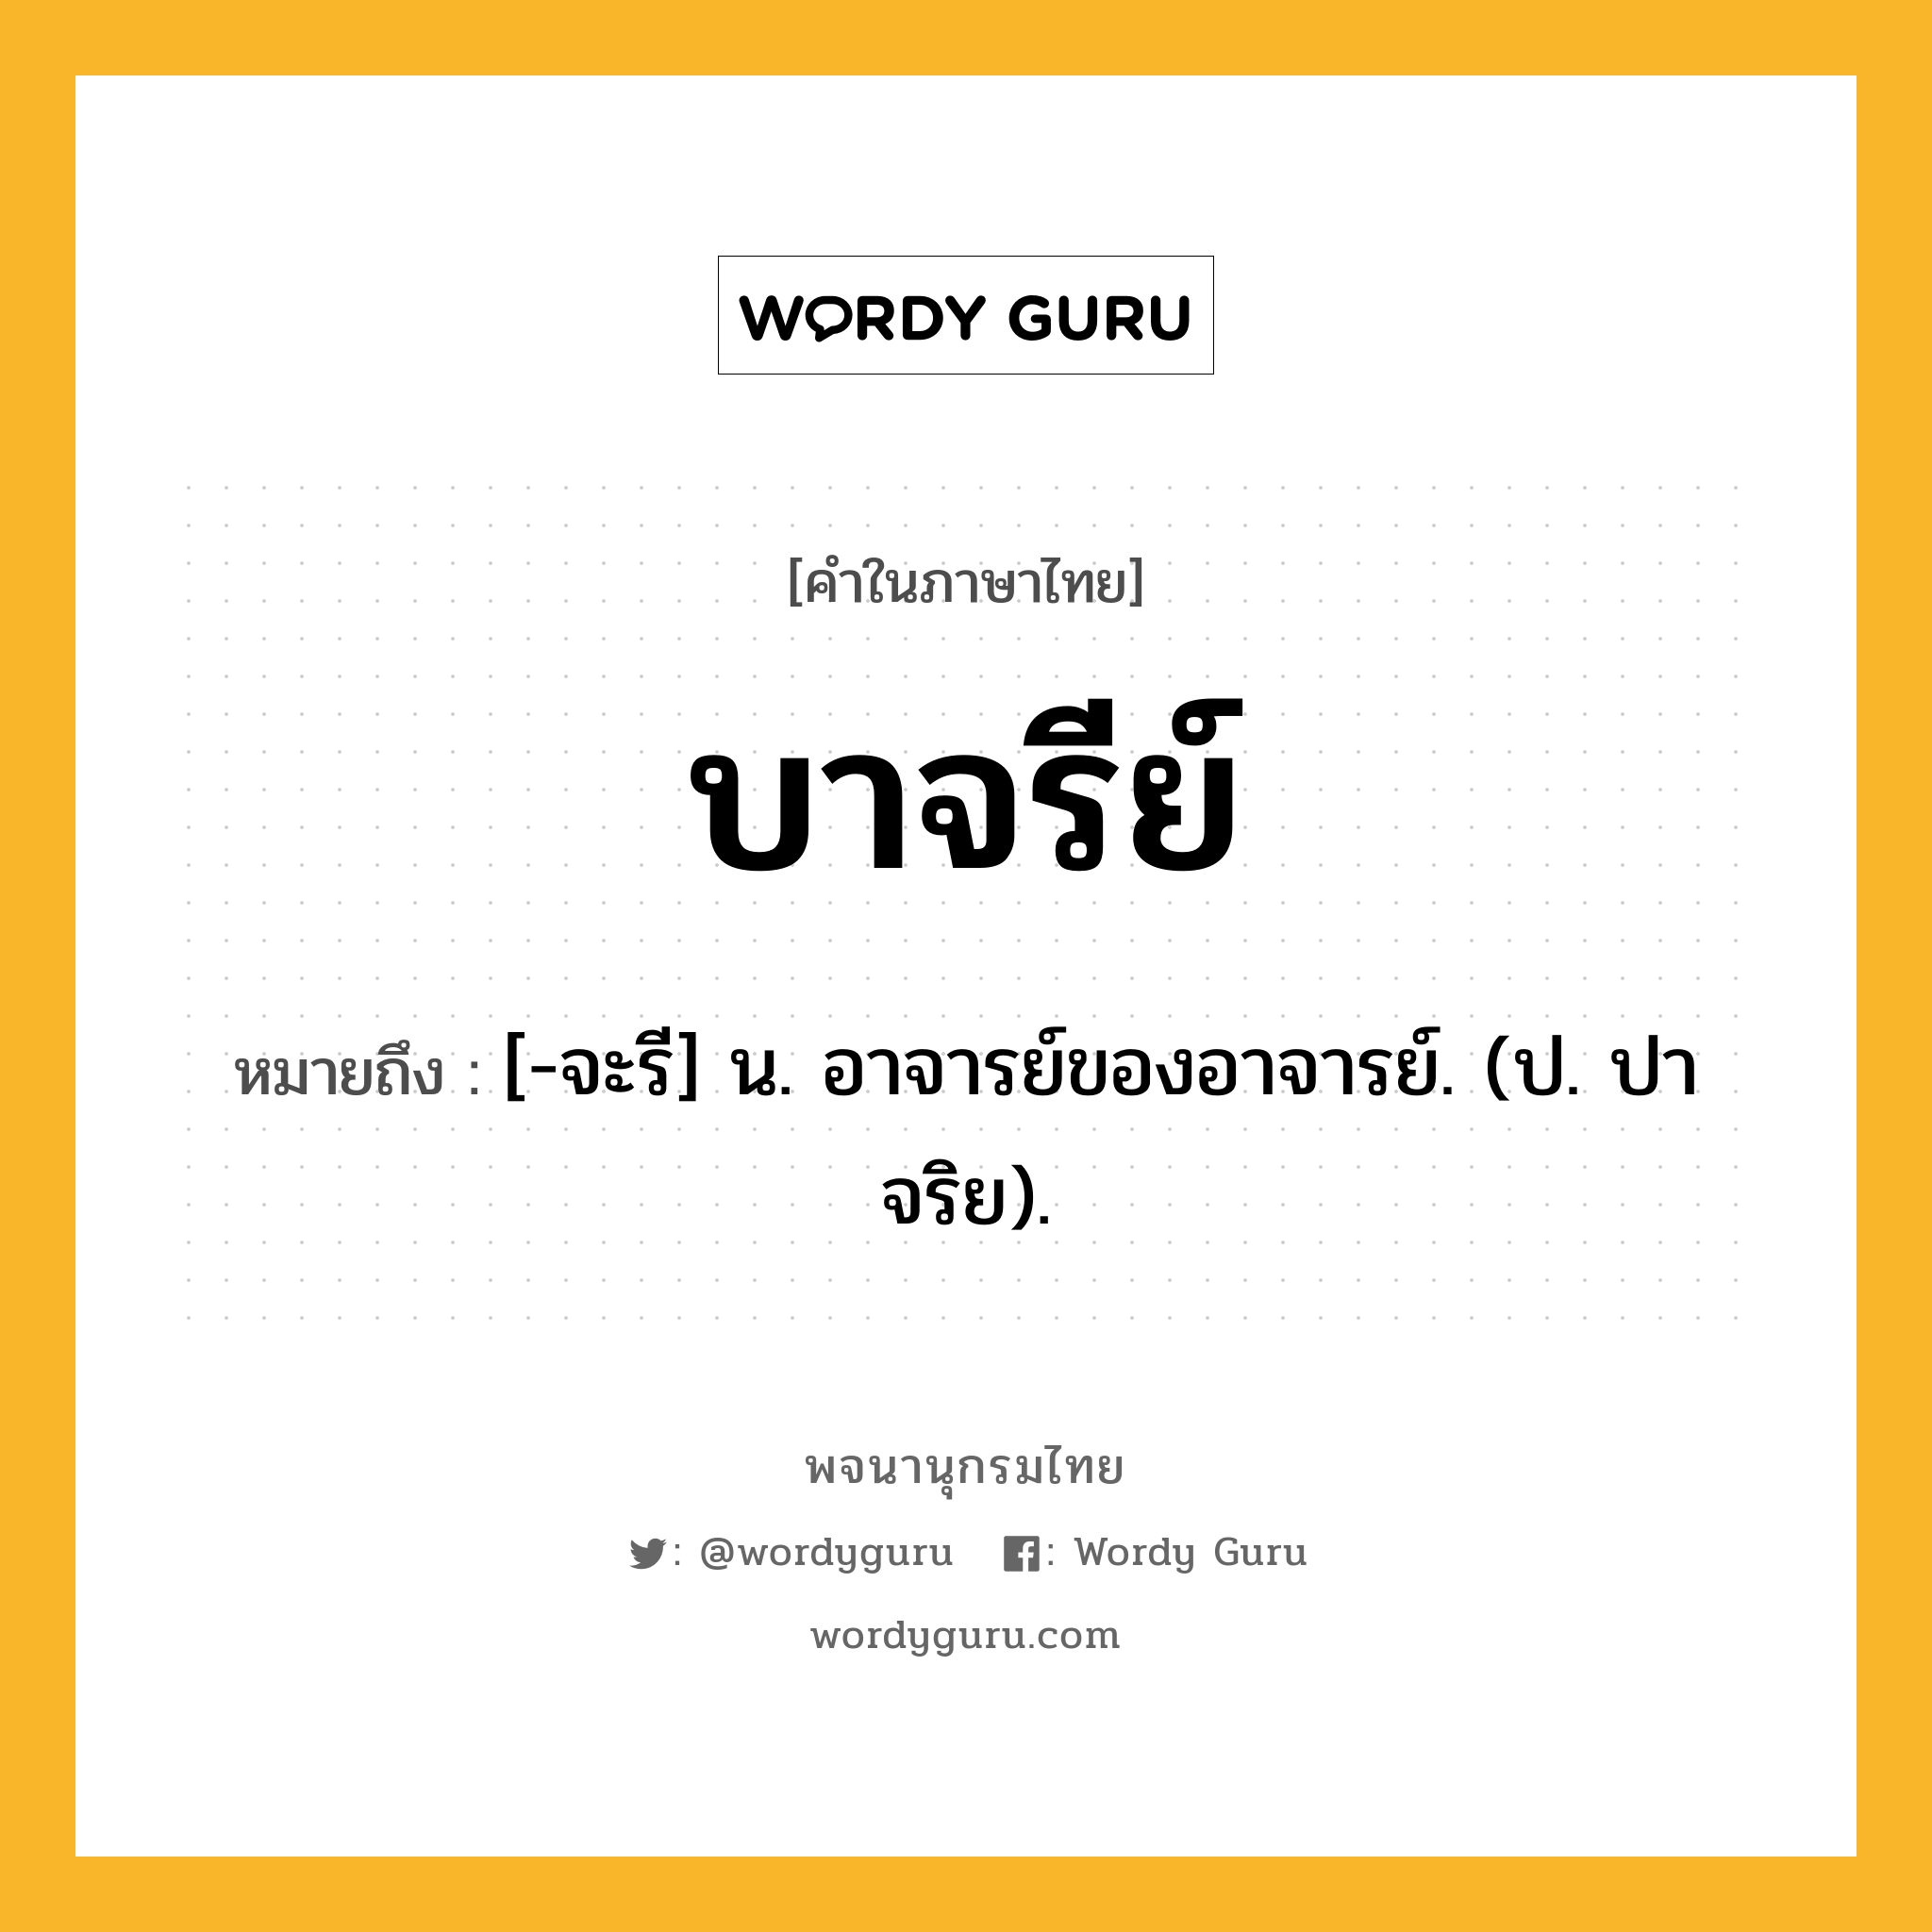 บาจรีย์ ความหมาย หมายถึงอะไร?, คำในภาษาไทย บาจรีย์ หมายถึง [-จะรี] น. อาจารย์ของอาจารย์. (ป. ปาจริย).